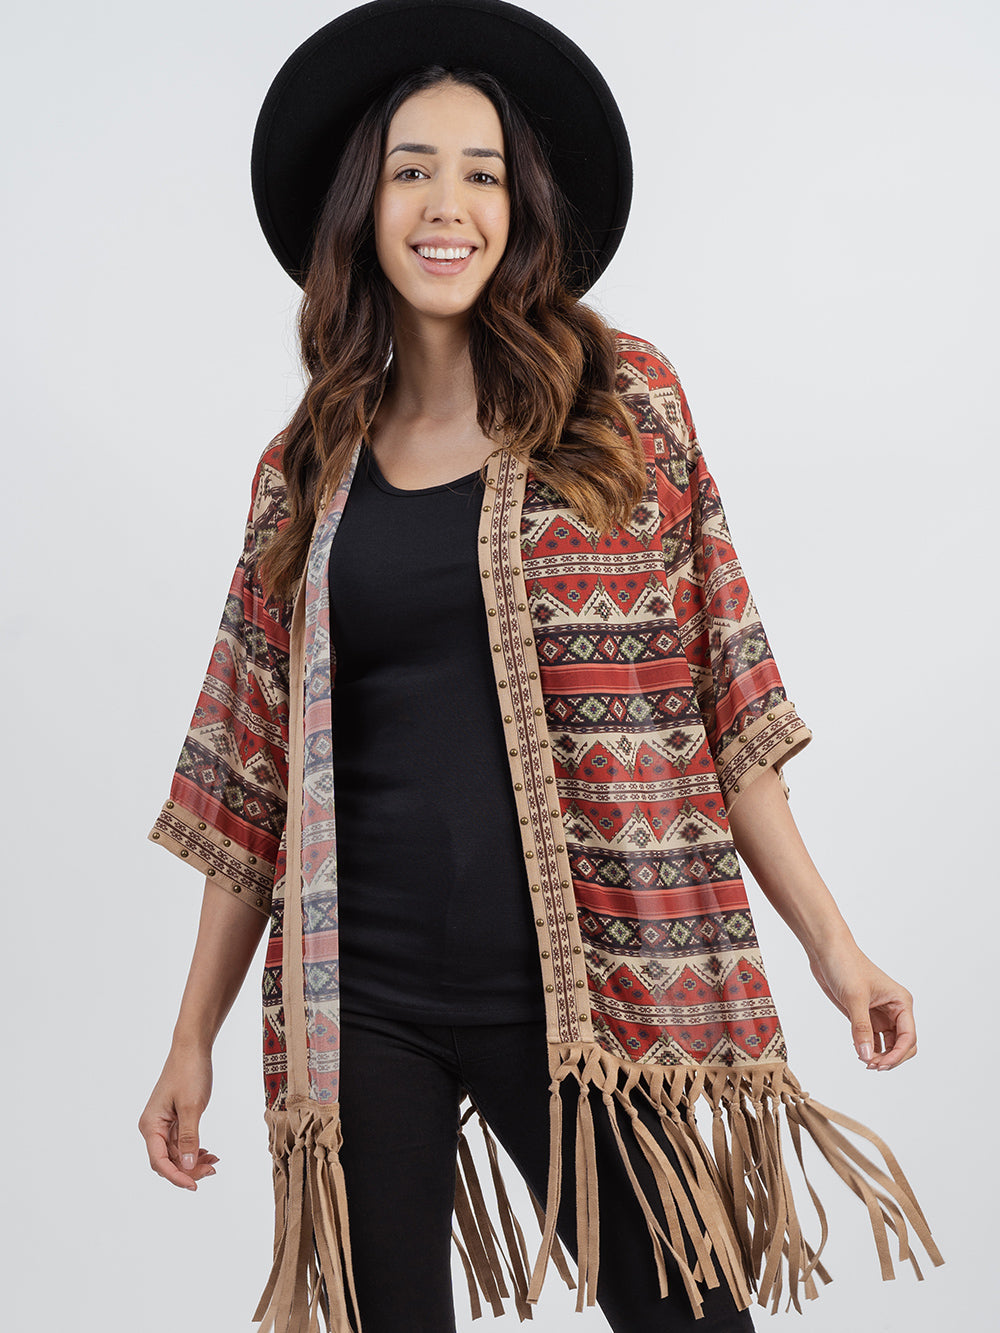 Delila Aztec Graphic Studded Half Sleeve Fringe Kimono - Montana West World